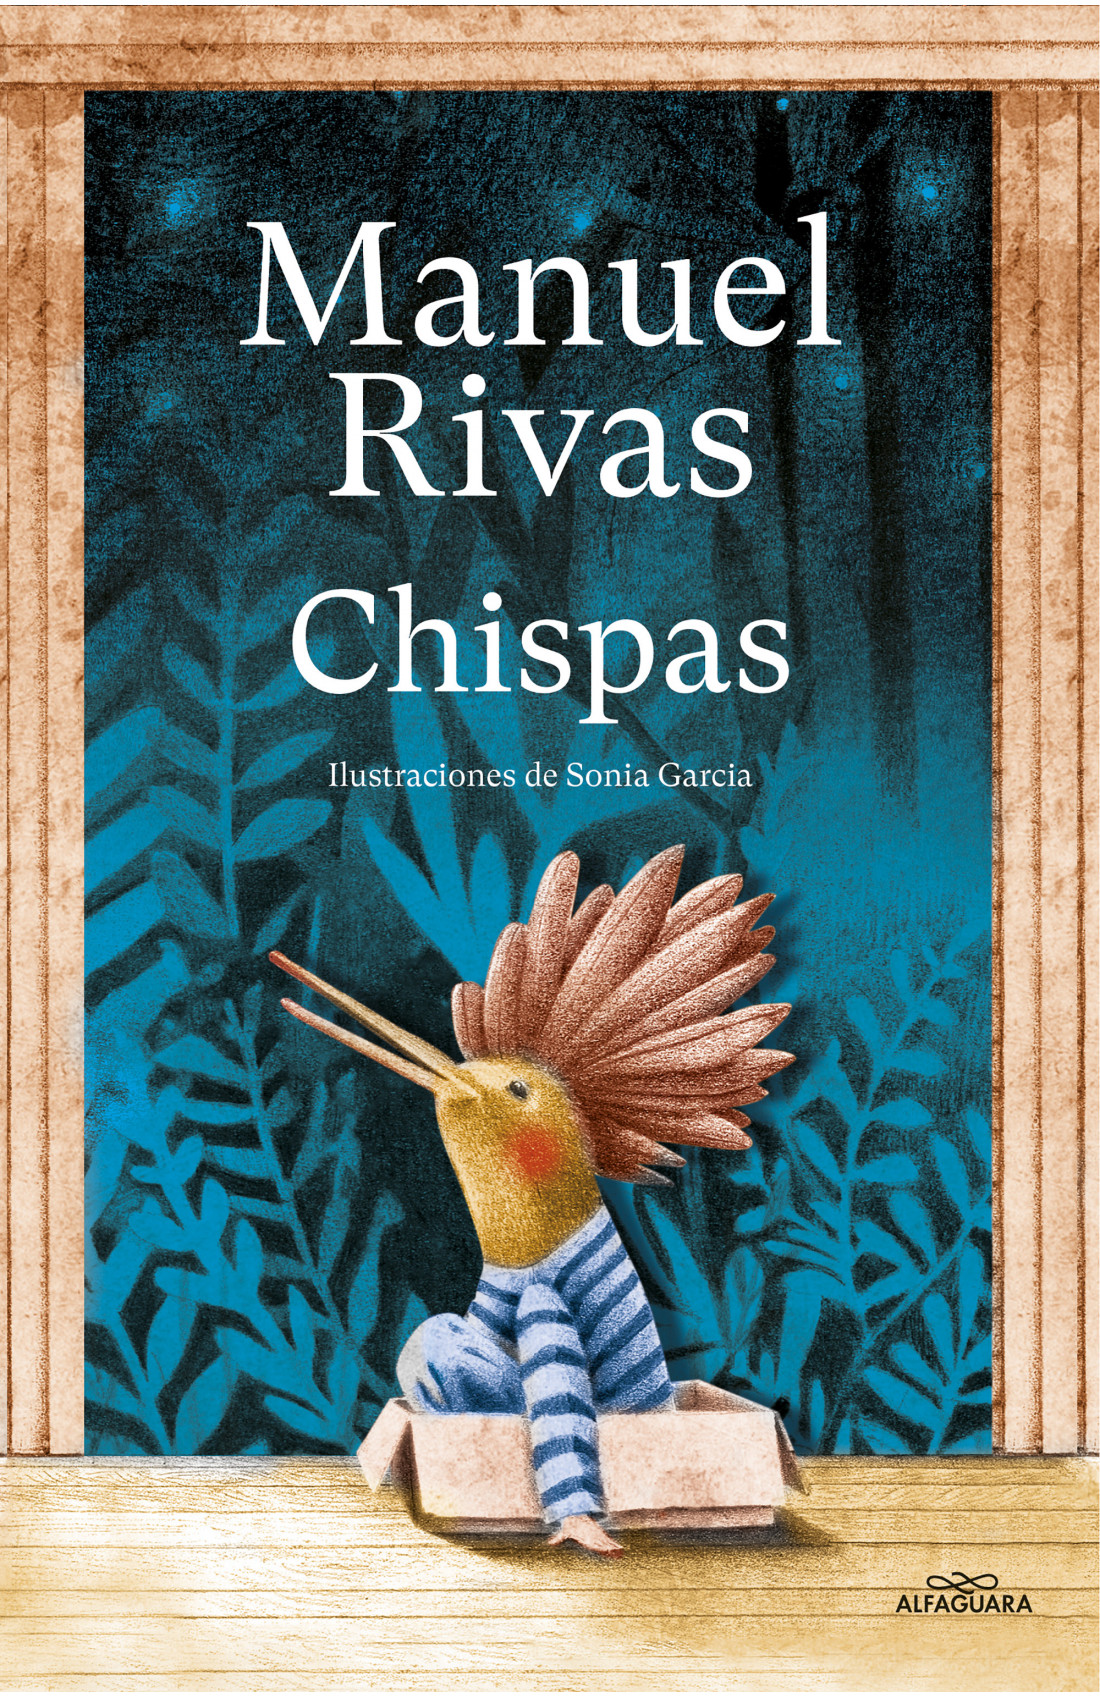 MANUEL RIVAS presenta y firma 'Chispas'